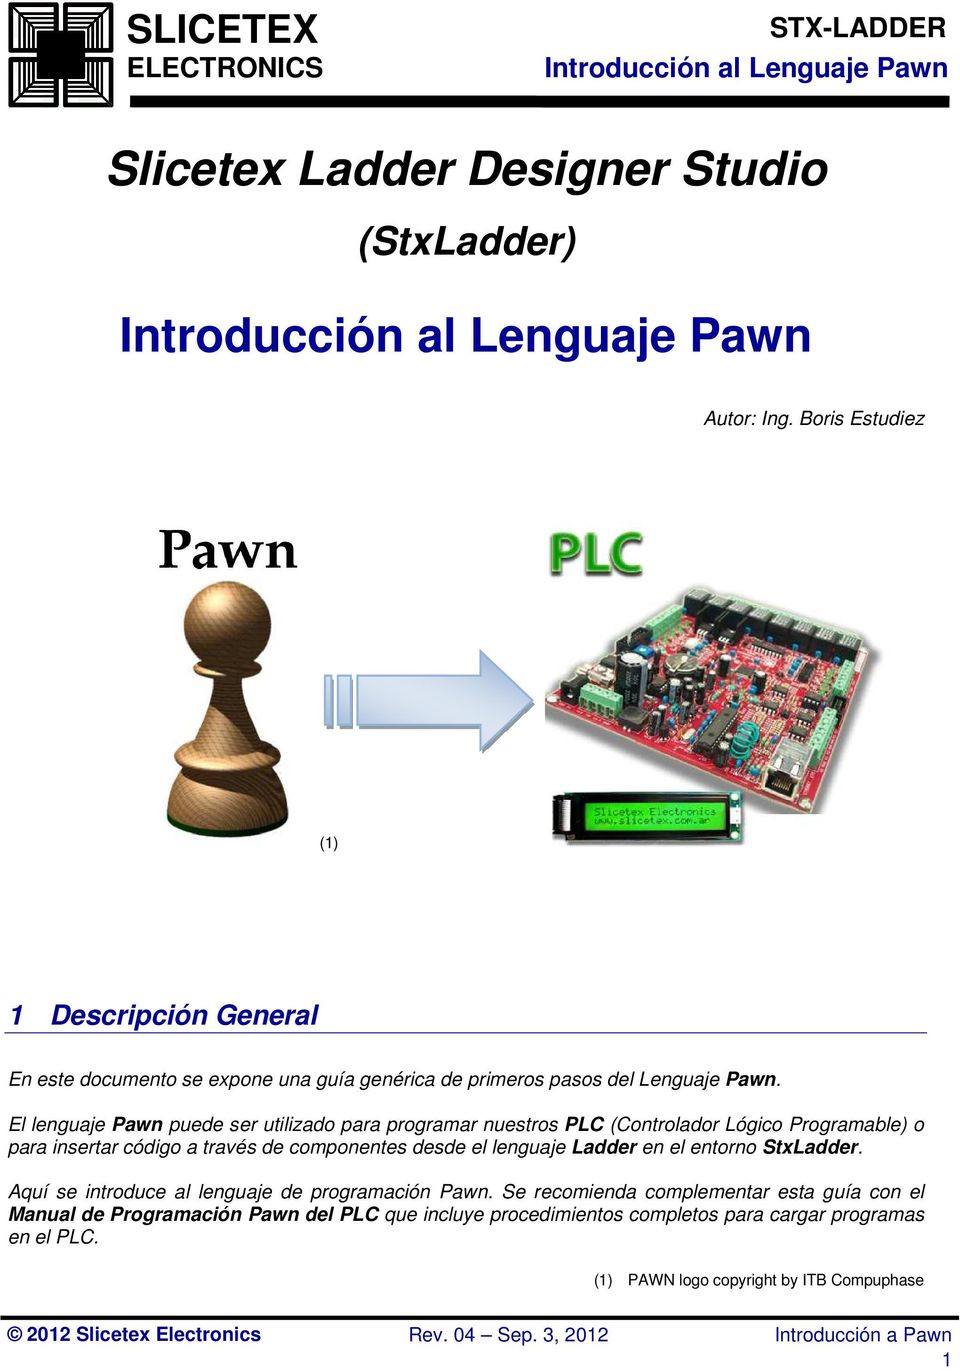 El lenguaje Pawn puede ser utilizado para programar nuestros PLC (Controlador Lógico Programable) o para insertar código a través de componentes desde el